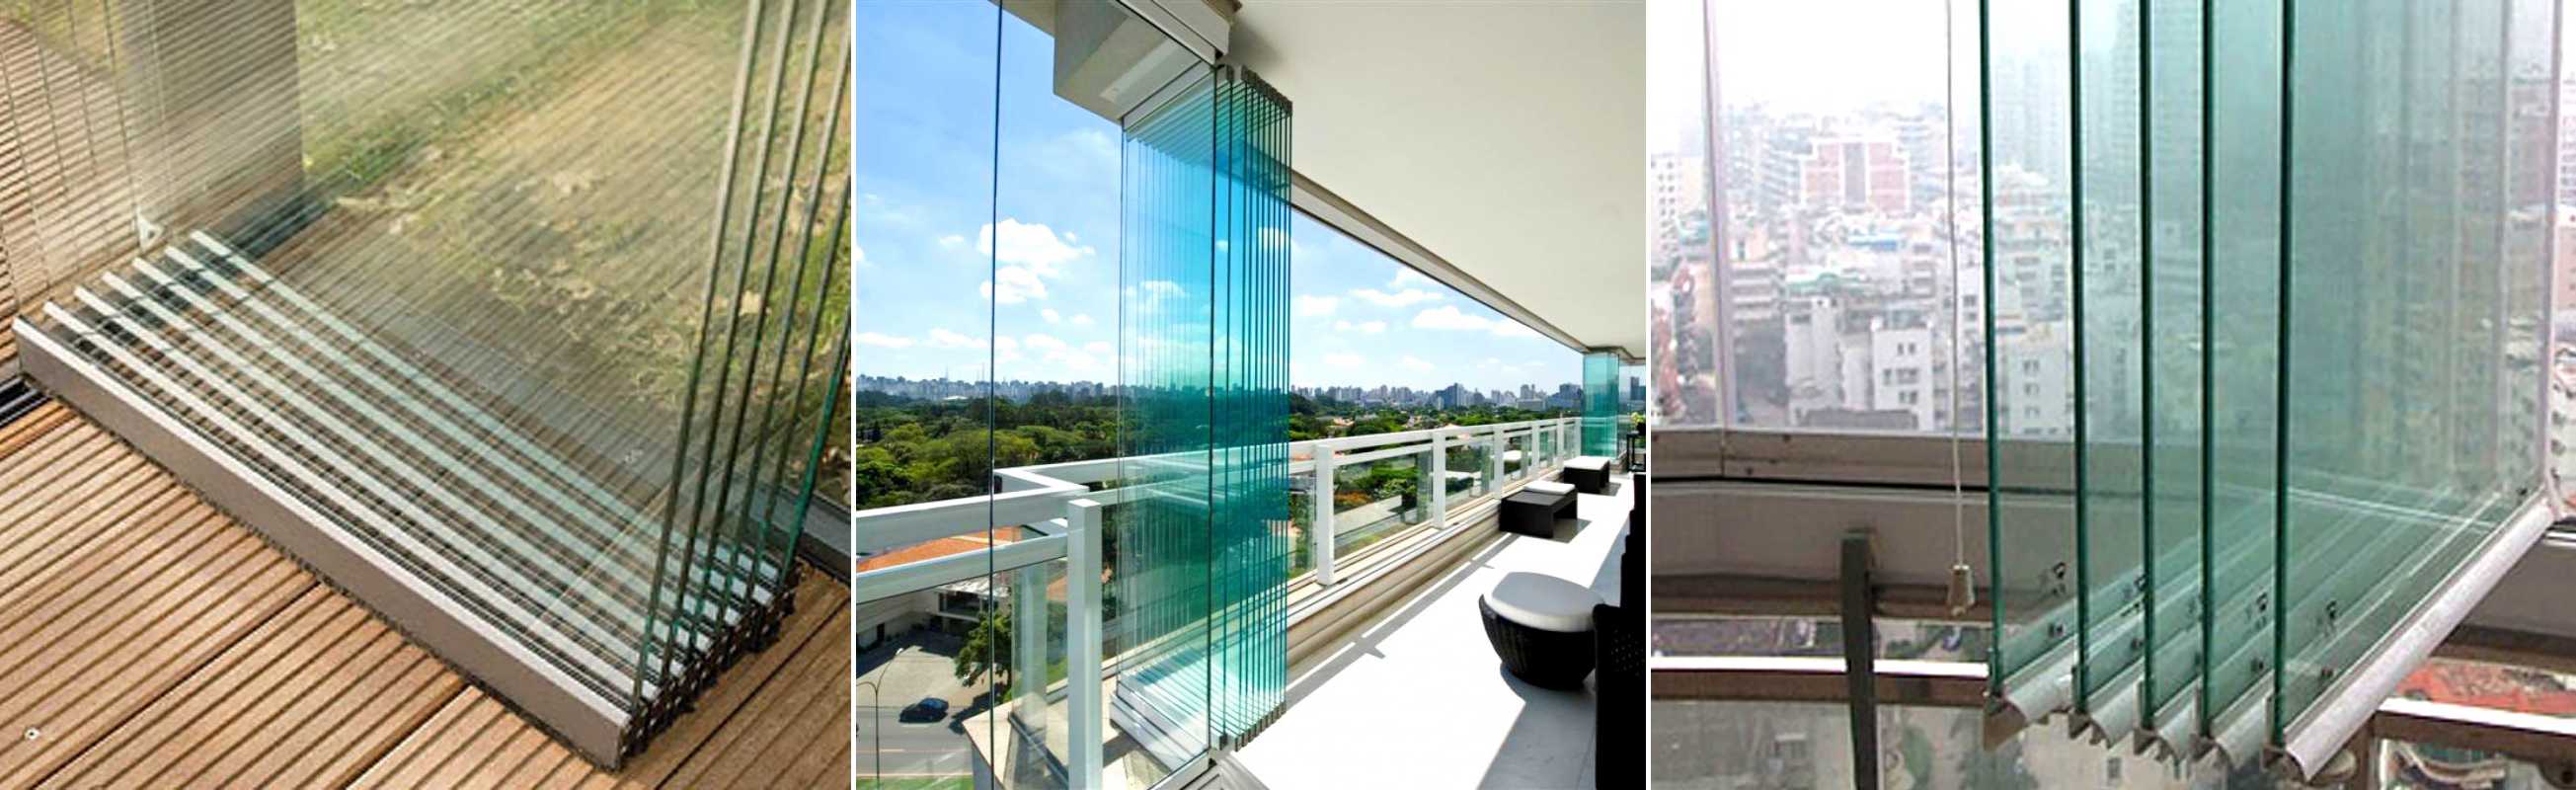 Что лучше: застеклённый балкон или открытый? -